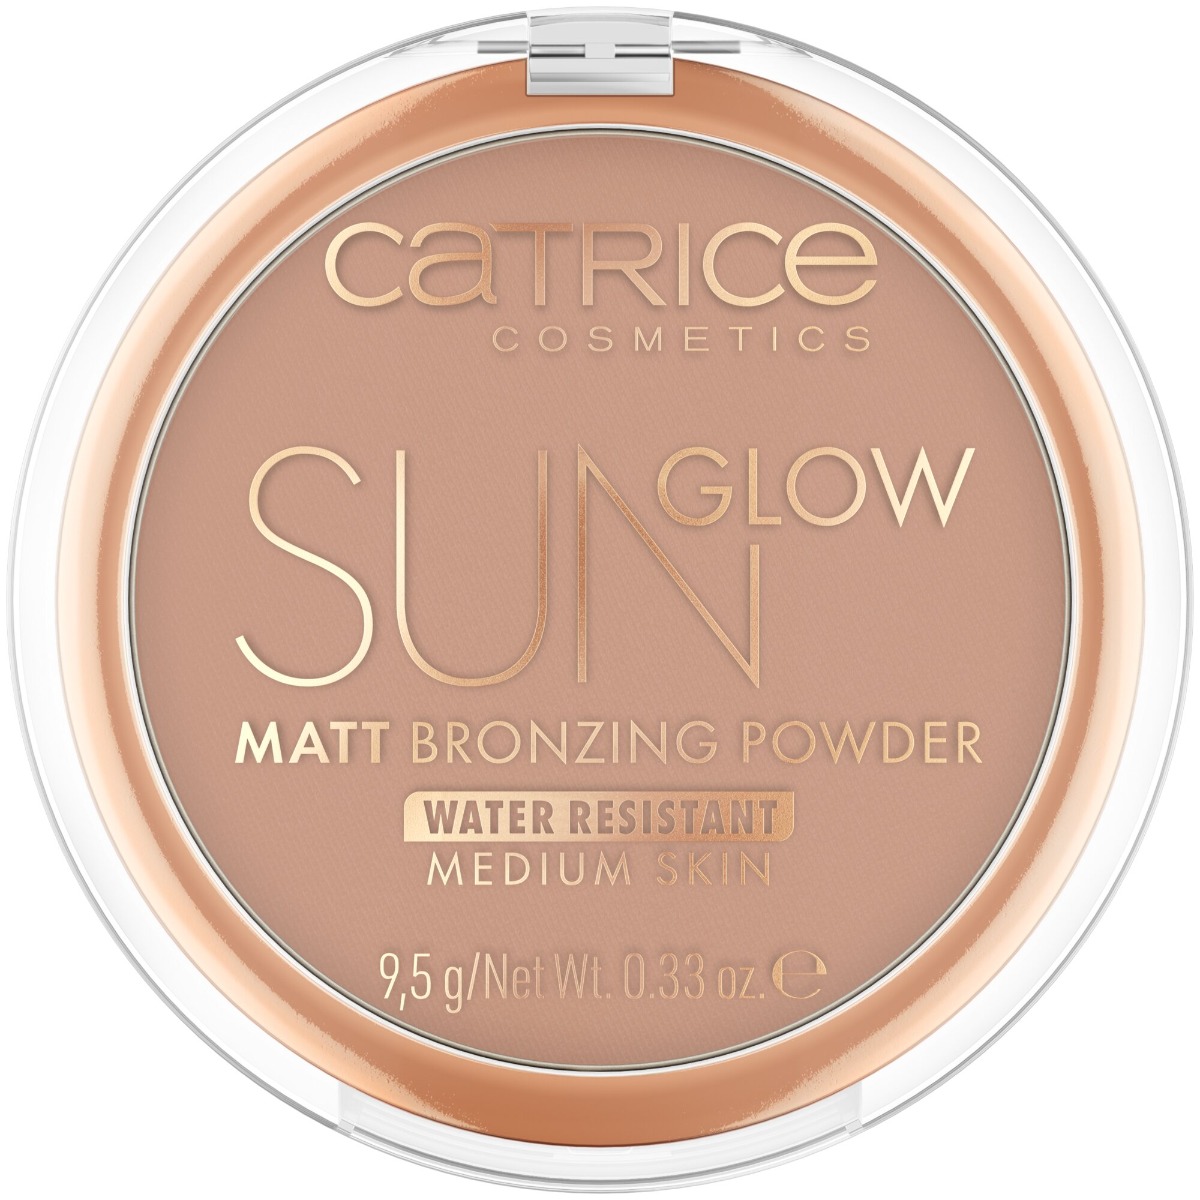 Pudra bronzanta Sun Glow Matt Bronzing Powder 030 - Medium Bronze, 9.5g, Catrice